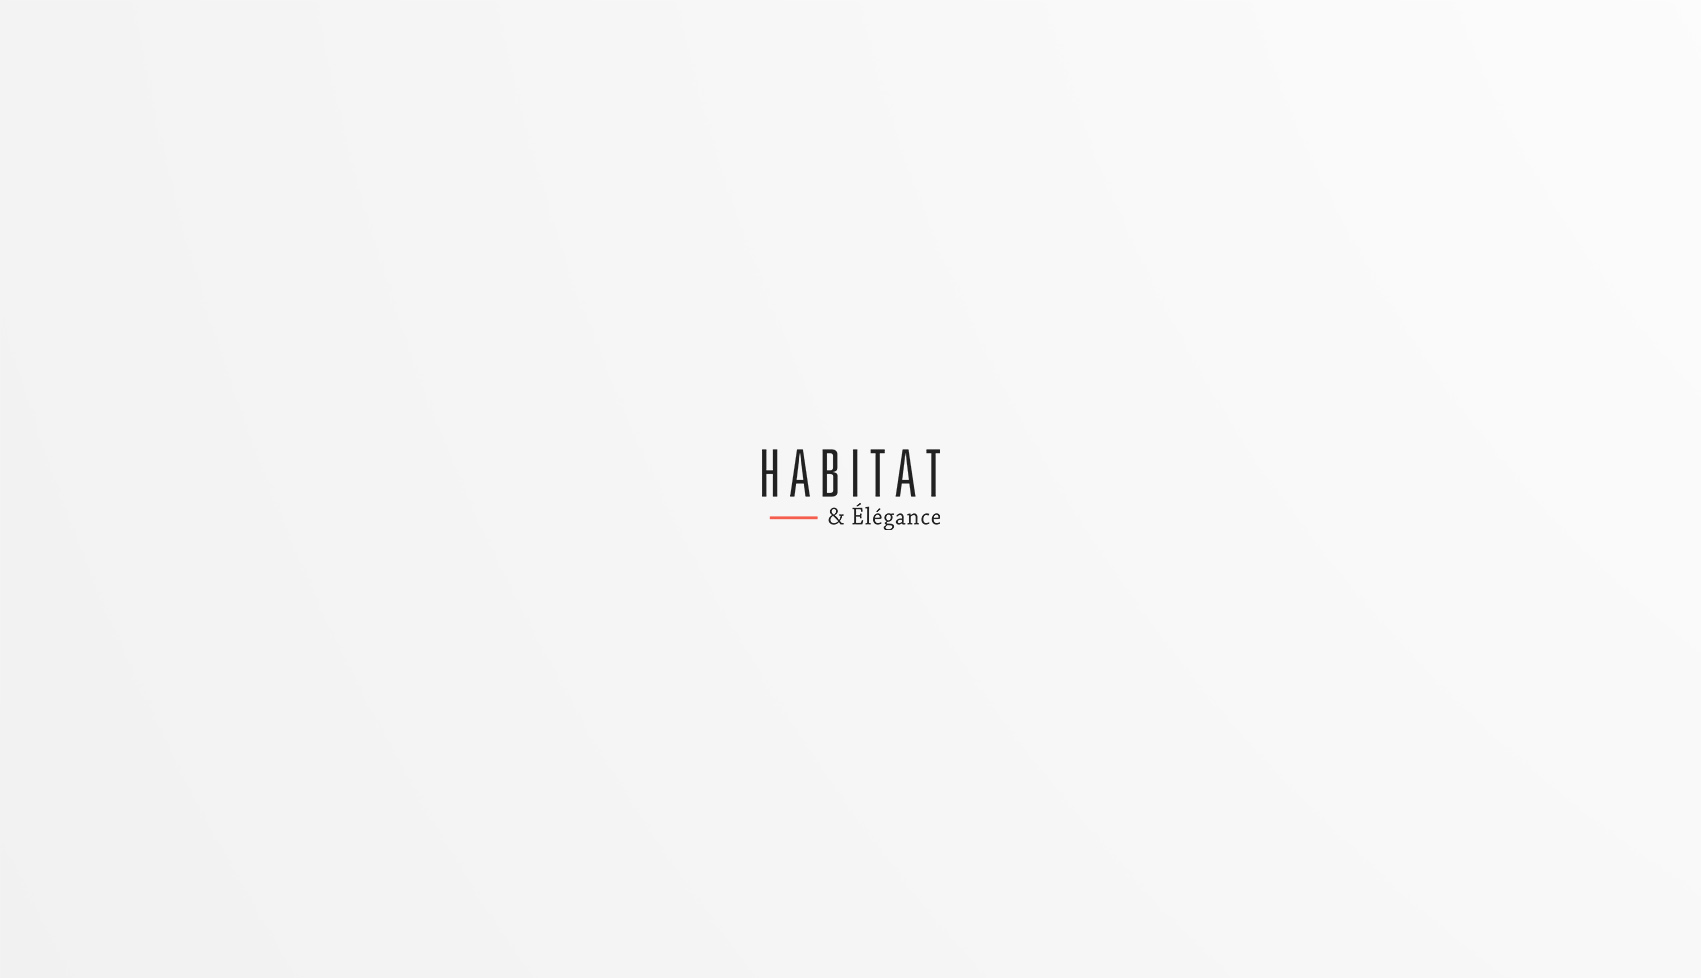 Habitat & élégance 2